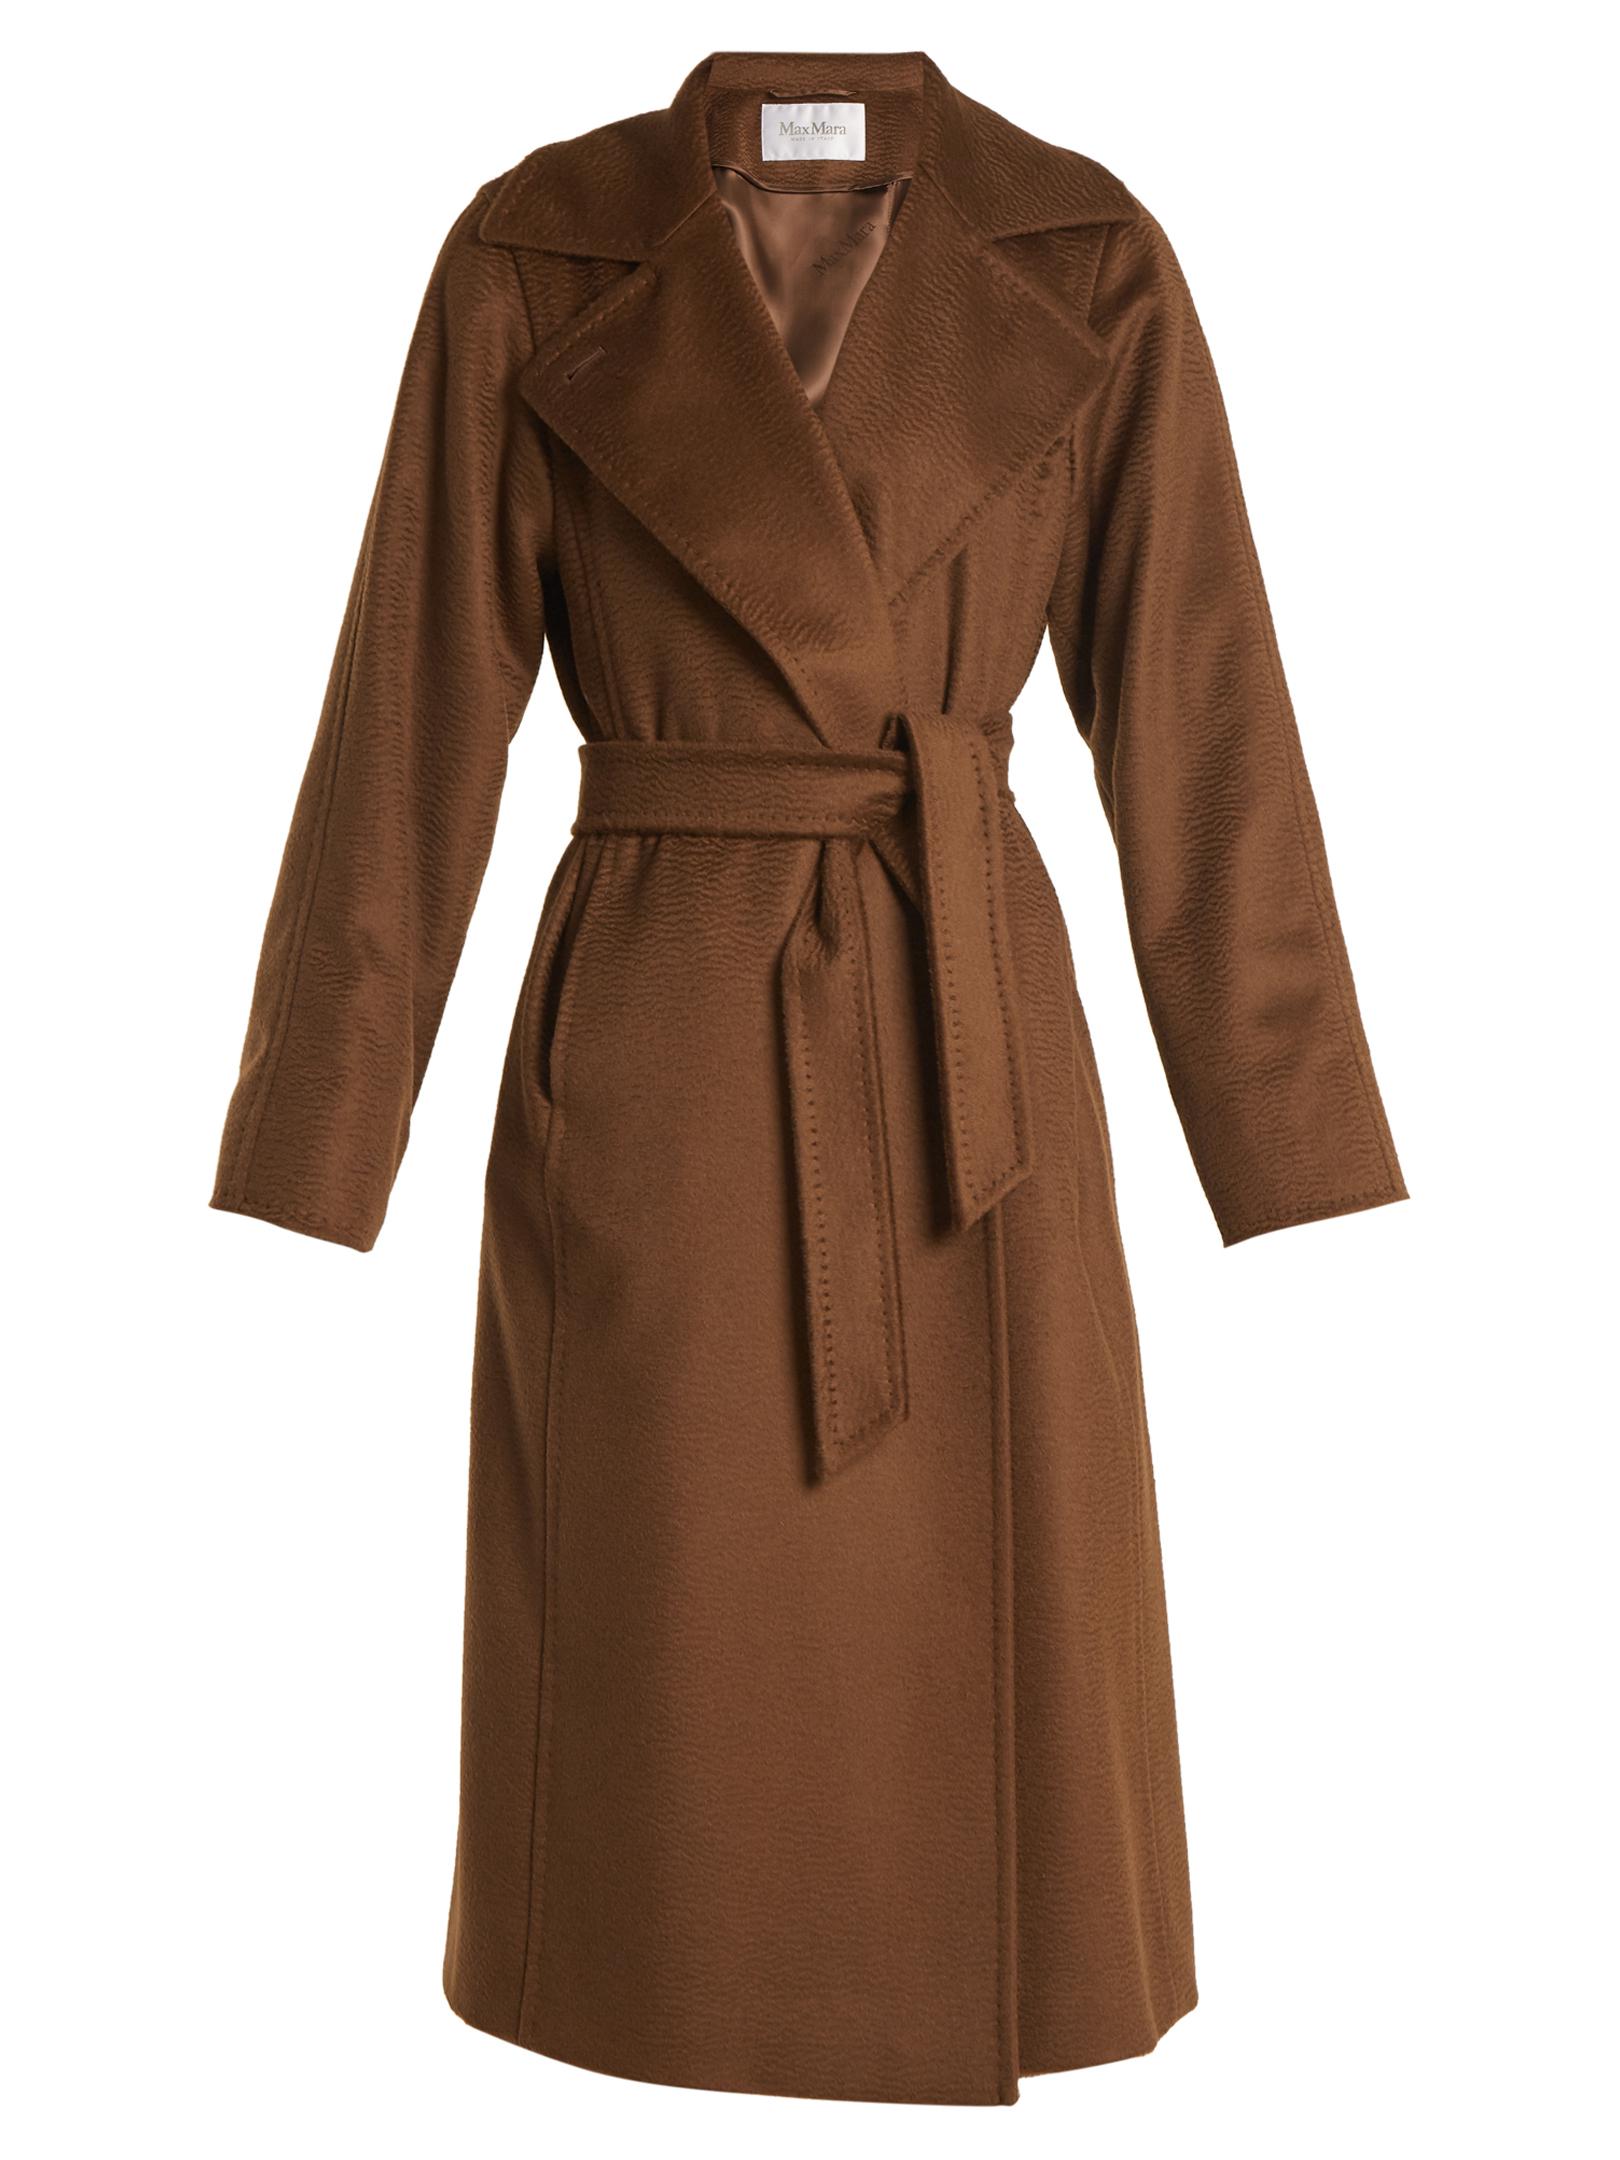 Lyst - Max Mara Manuel Coat in Brown